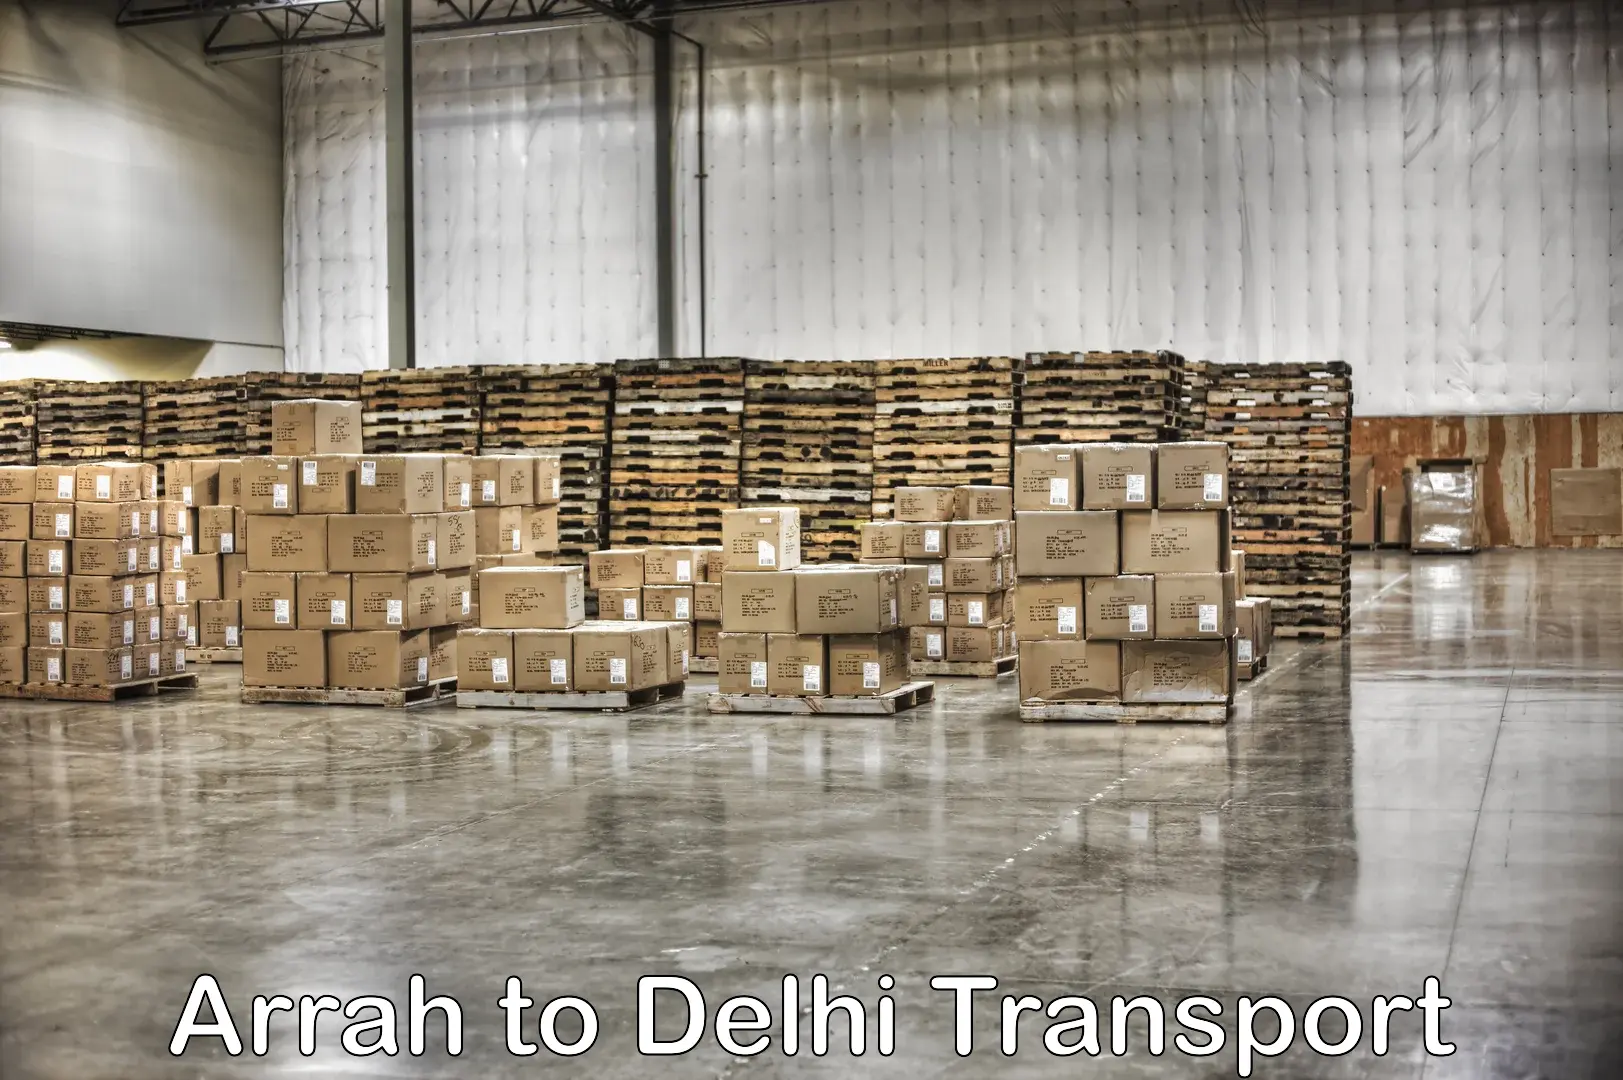 Pick up transport service Arrah to IIT Delhi